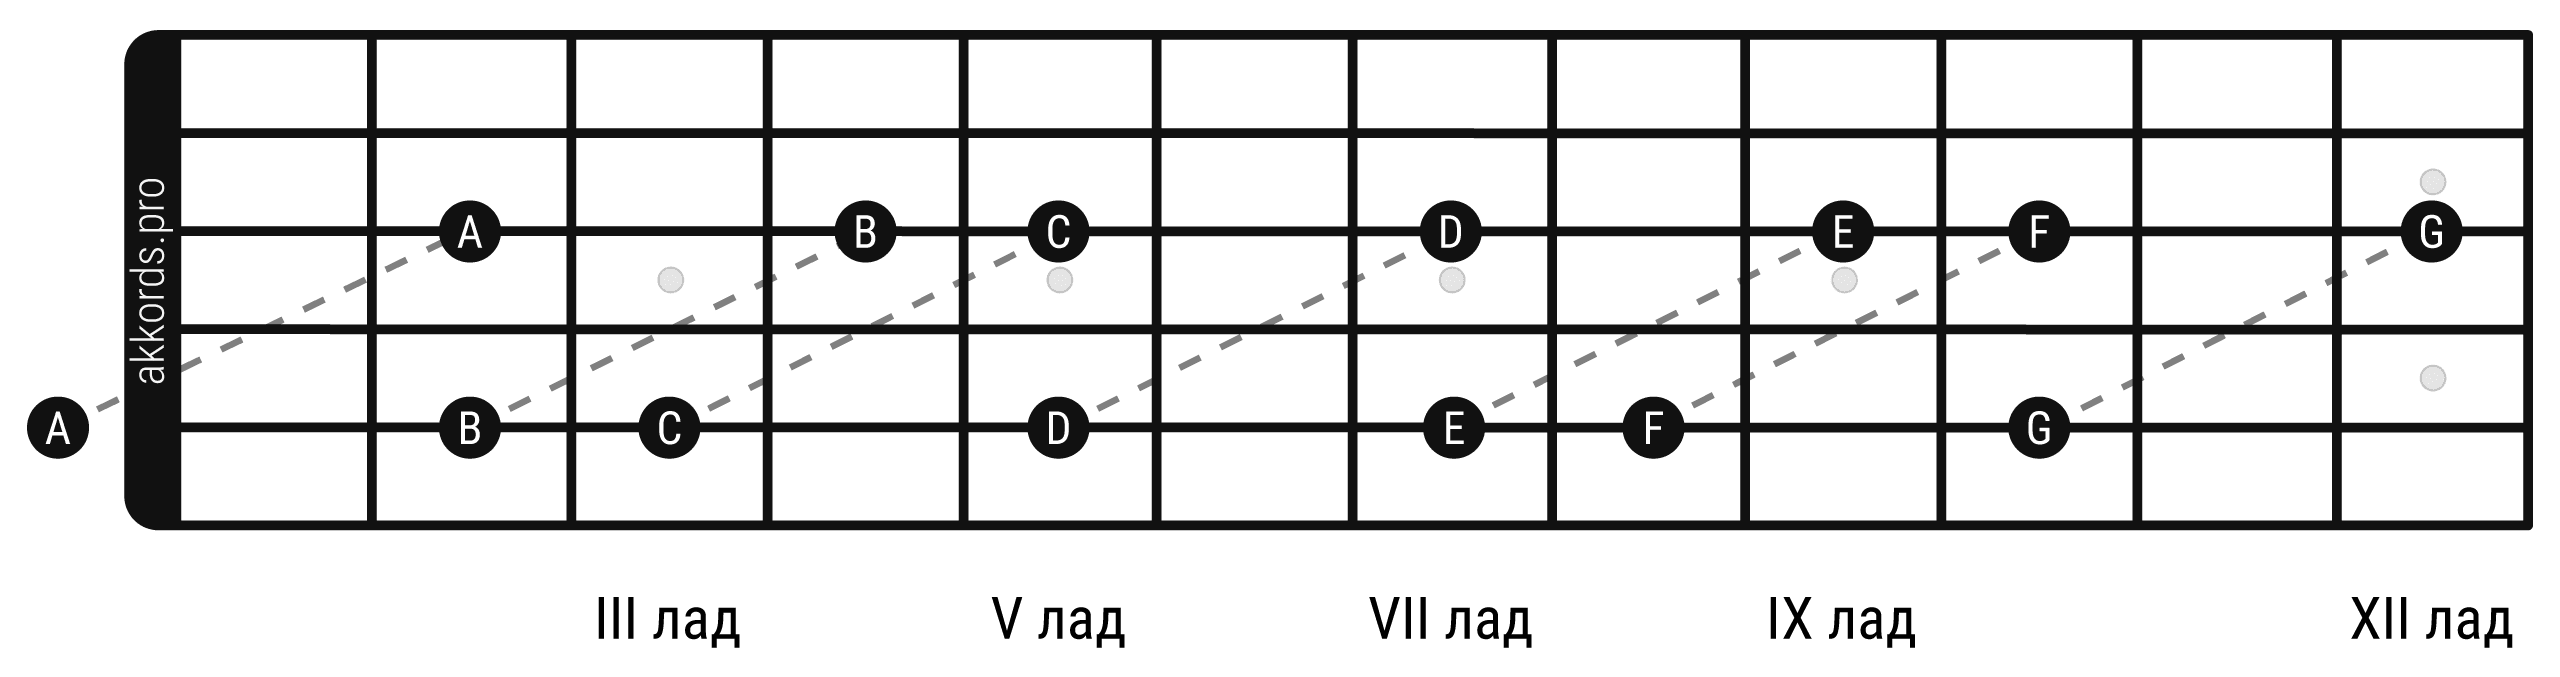 Ноты на грифе гитары: расположение нот на 3 струне